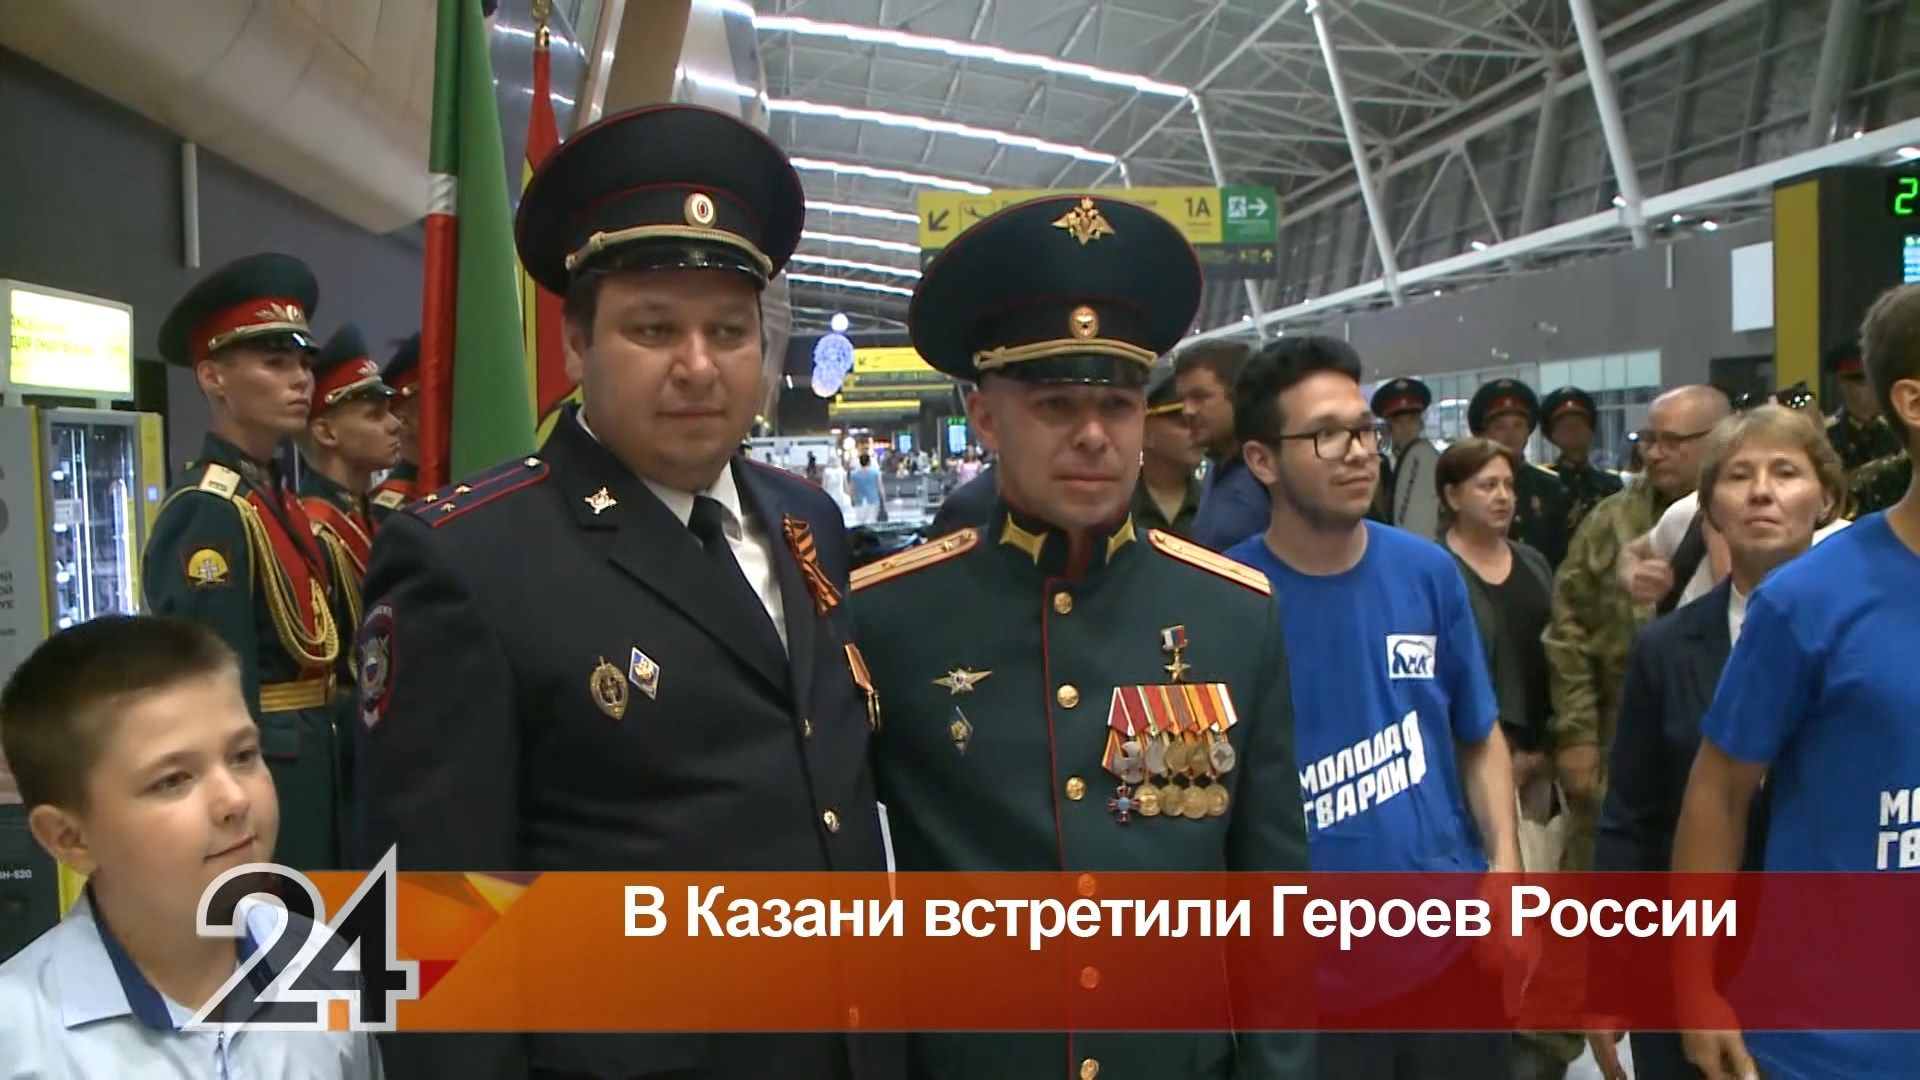 В Казани торжественно встретили героев России, вернувшихся из зоны СВО